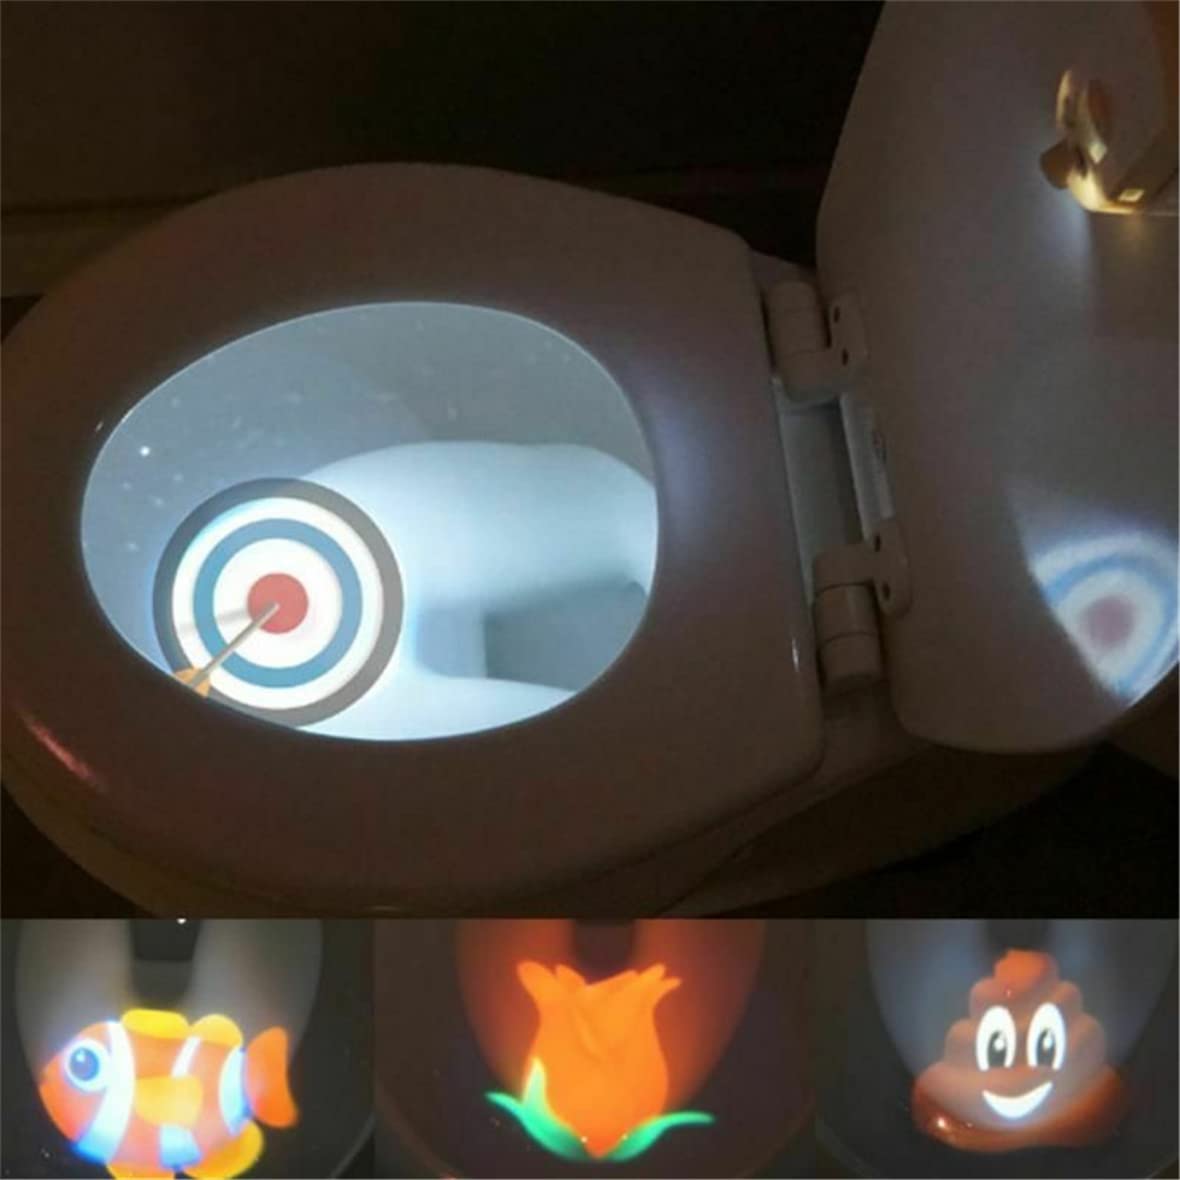 potty training baby led Toddler target potty-training toilet sensor light on amazon